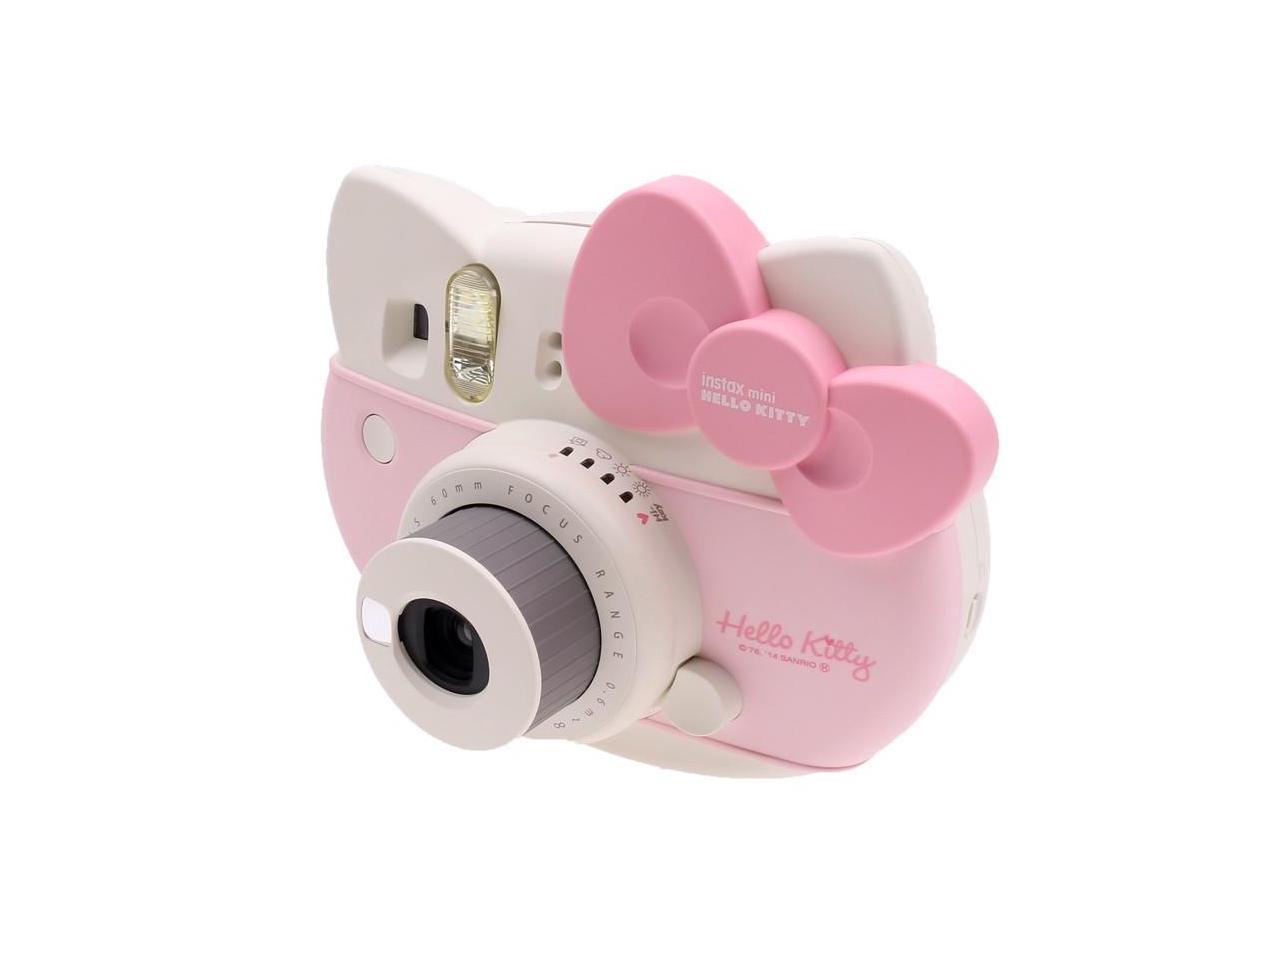 FUJIFILM instax mini HELLO KITTY 600015241 INSTANT Camera Kit